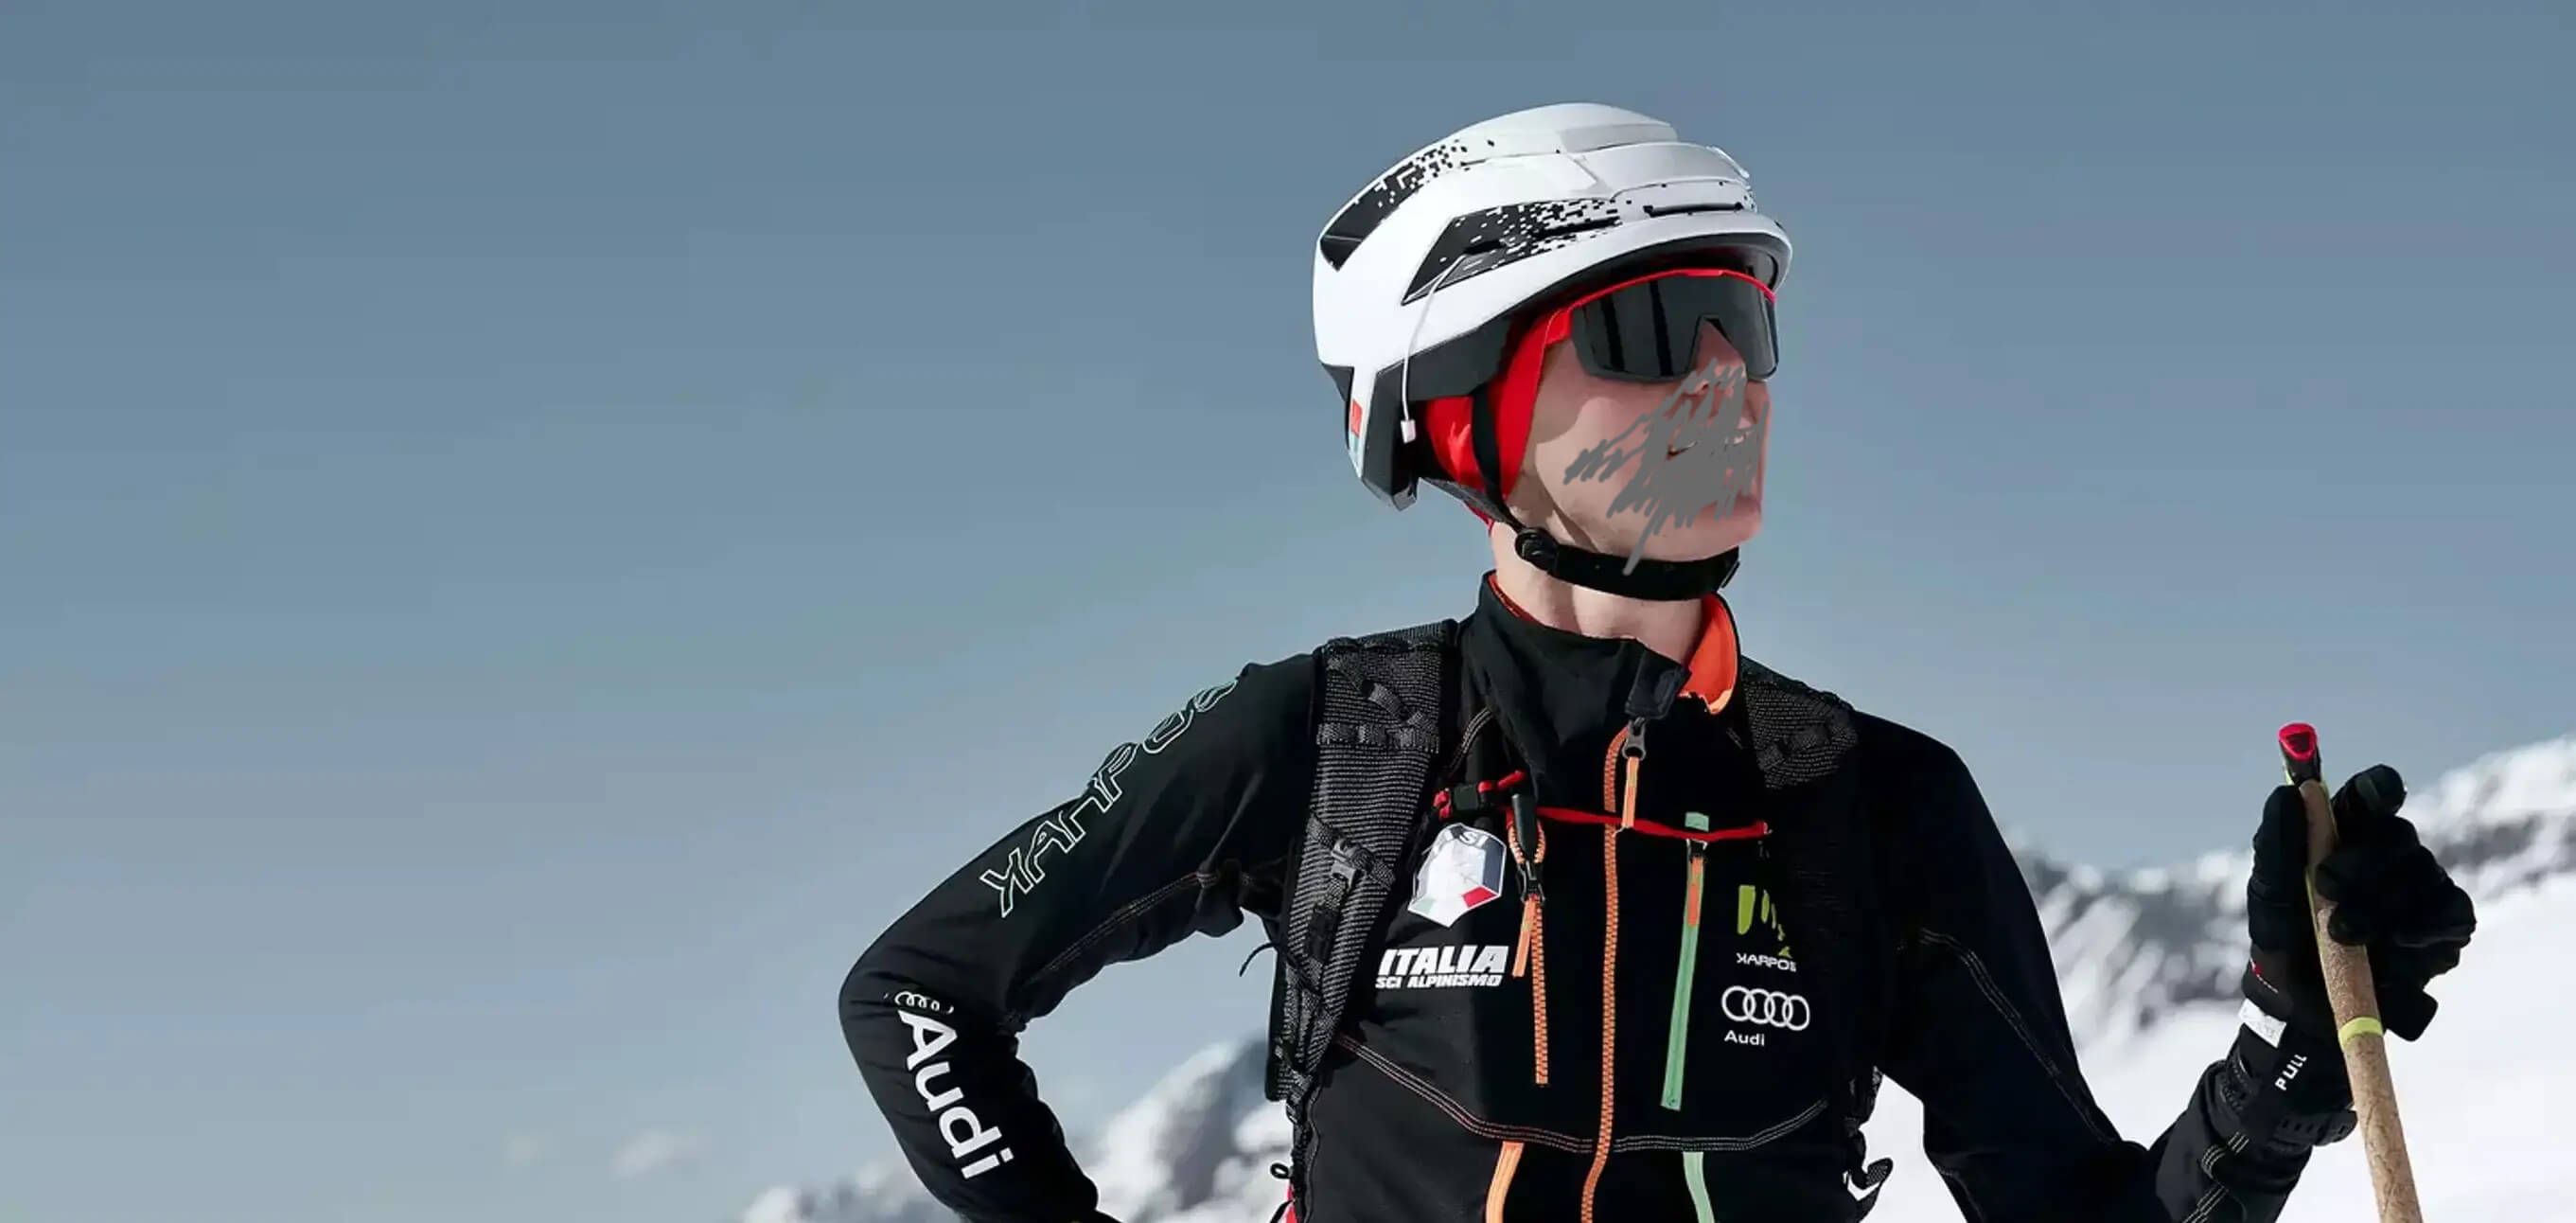 K2 Casco Esquí Diversion 2019 - Hombre